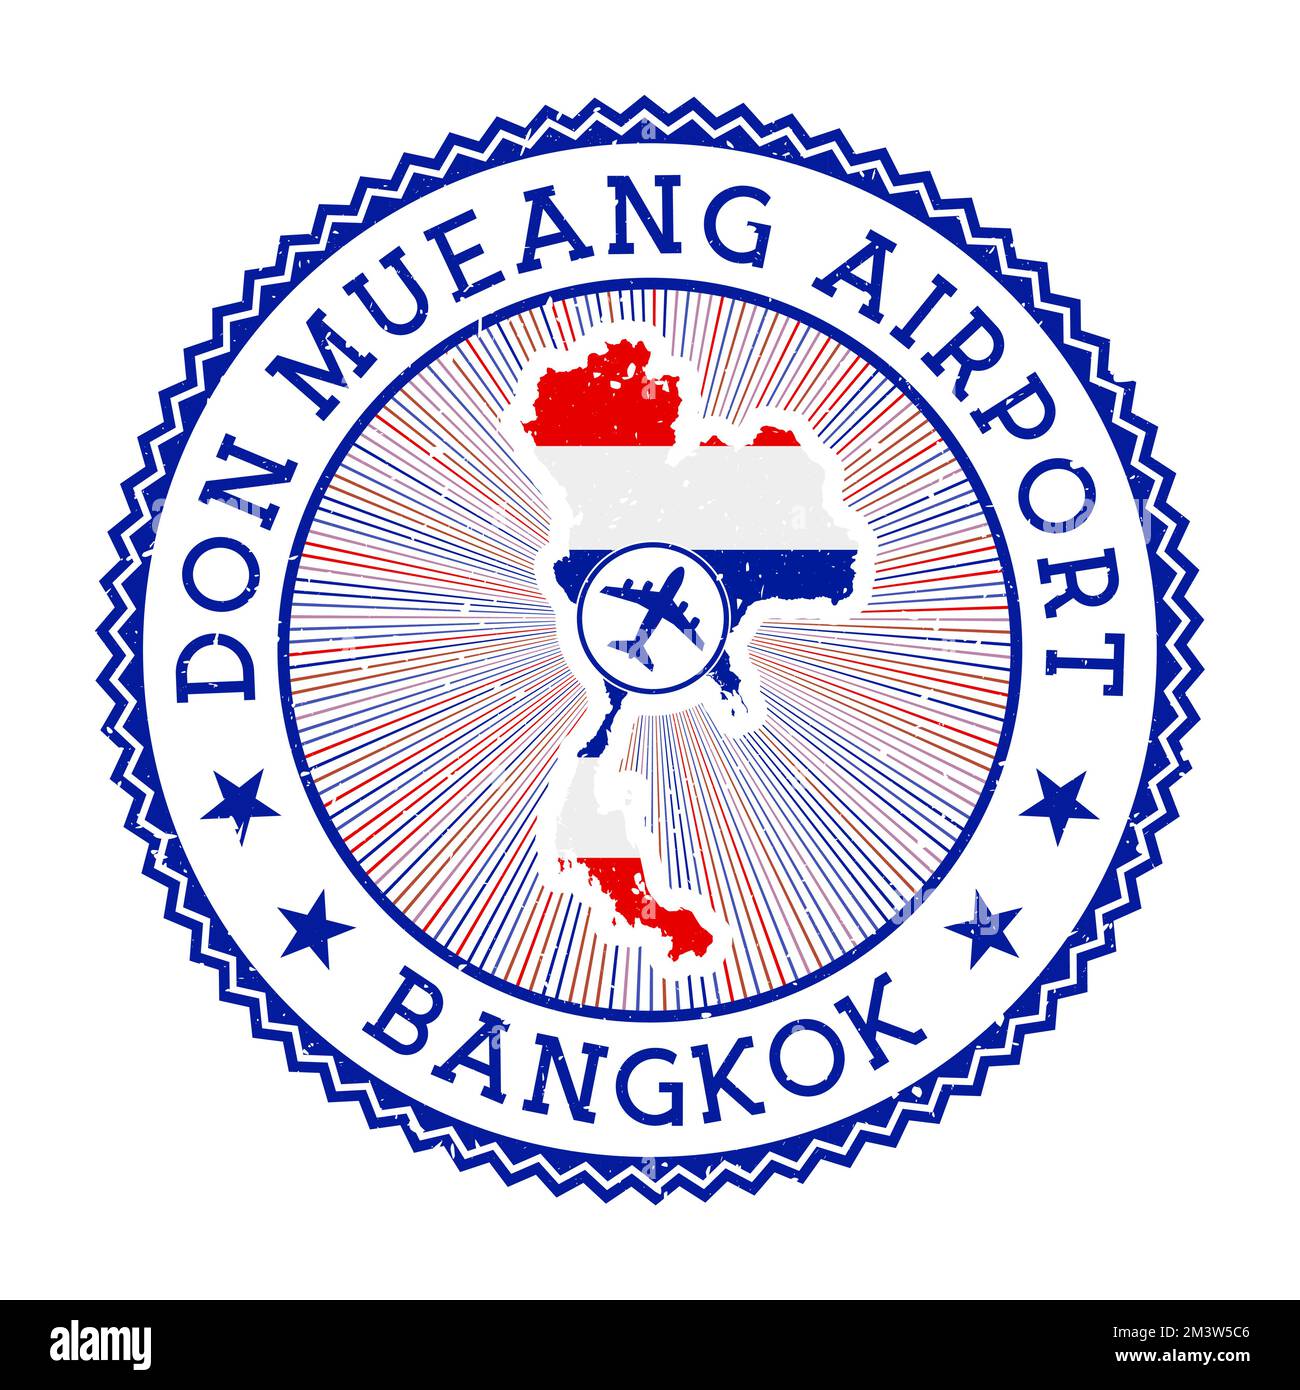 Don Mueang Airport Bangkok stamp. Airport logo vector illustration. Bangkok aeroport with country flag. Stock Vector